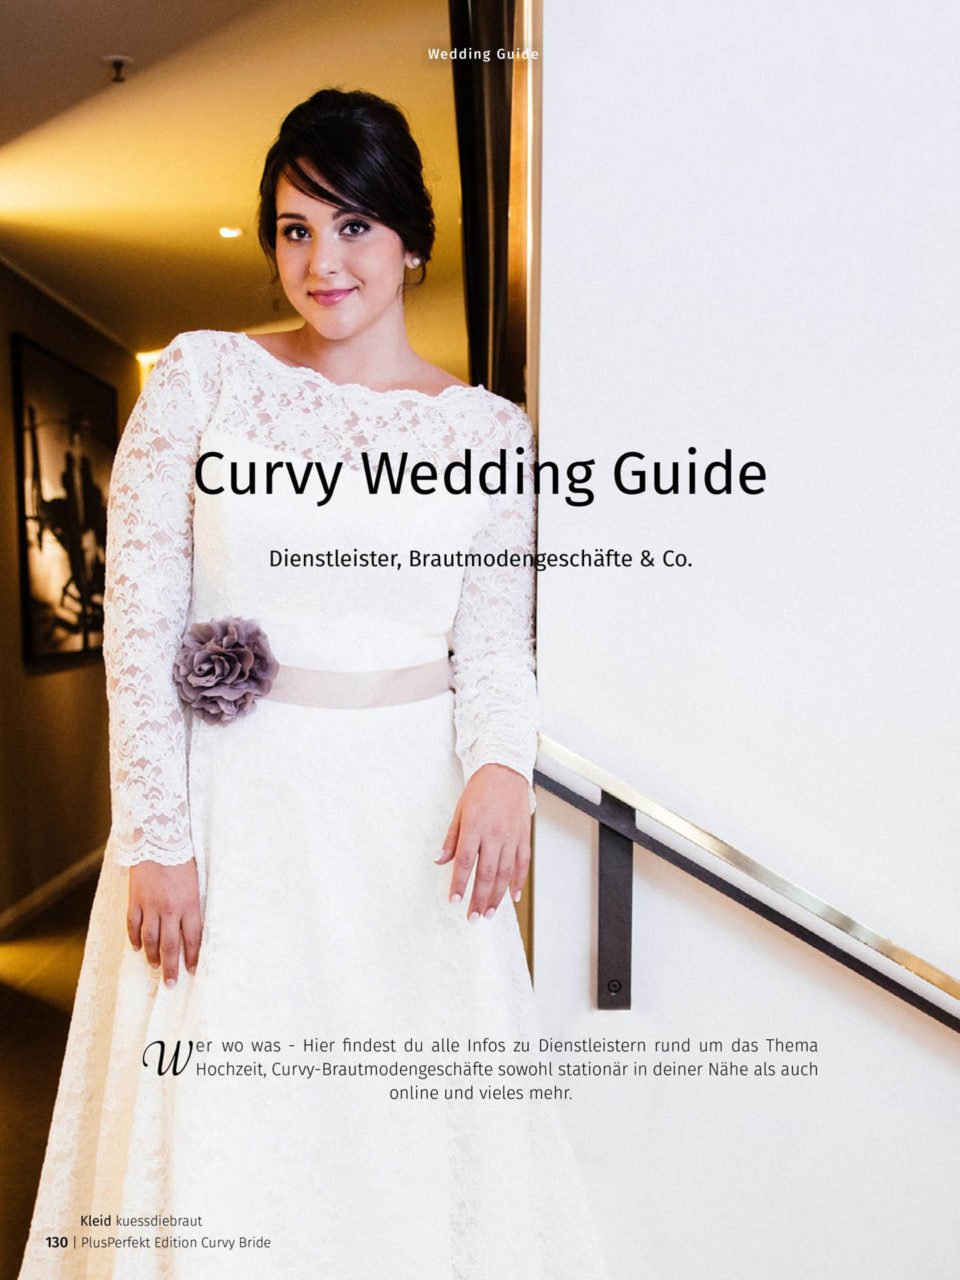 Curvy Bride Edition mit Wedding Guide